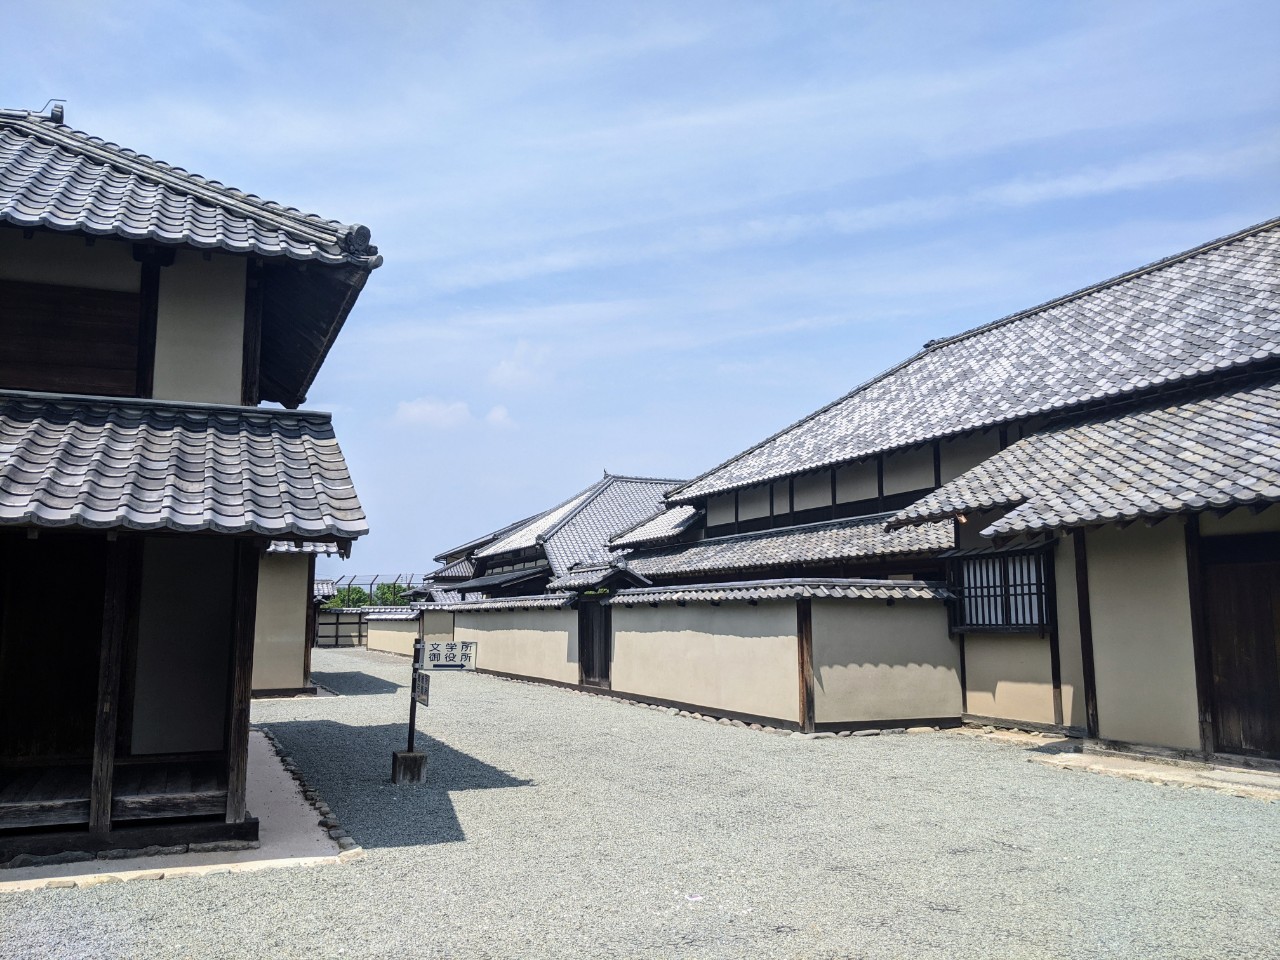 Matsushiro Bunbu Literary & Military Arts School